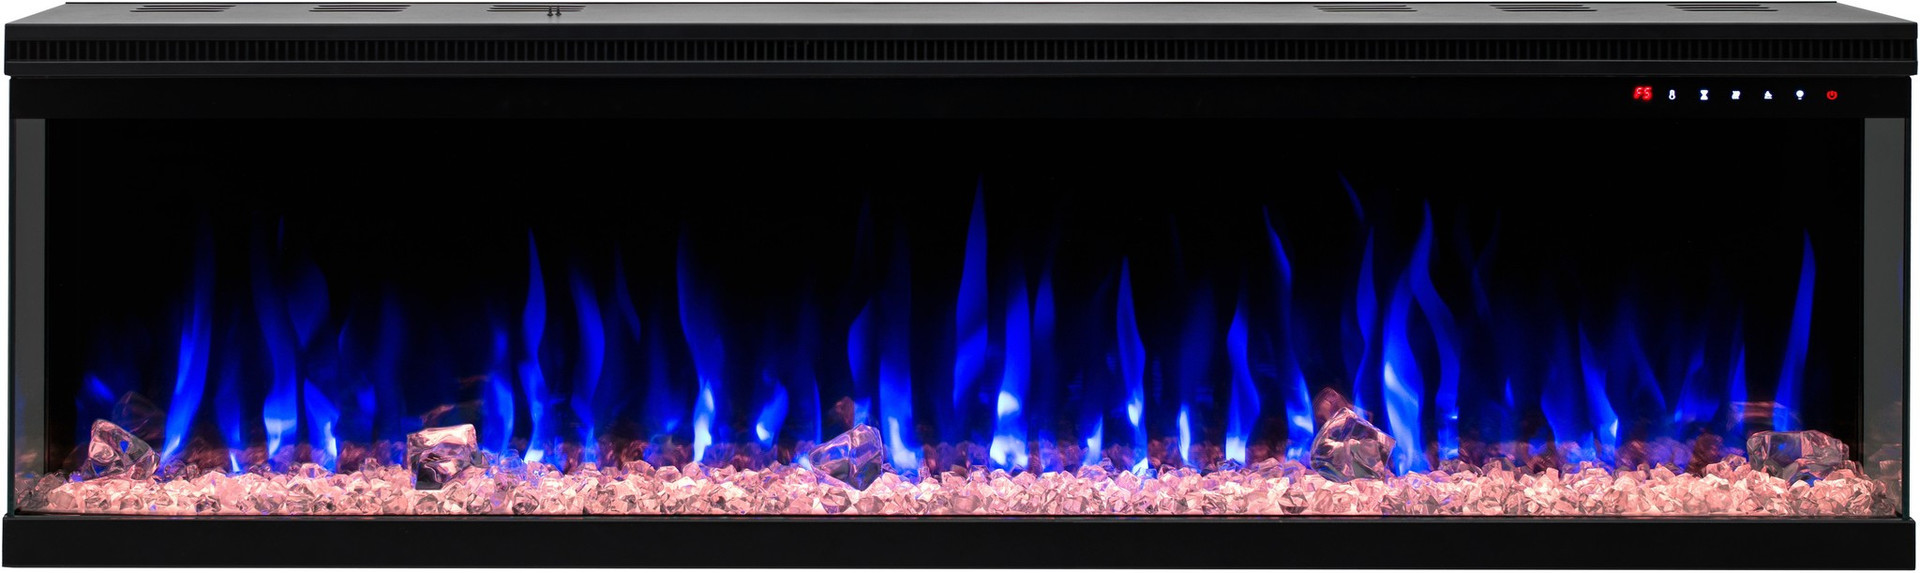 Lareira elétrica Alpbach, 1800W, 2 níveis de calor, 65x51,5x14 cm, efeito de chama realista com brasas, janela de visualização, moldura  feita de resina, deteção Open Window, brilho ajustável